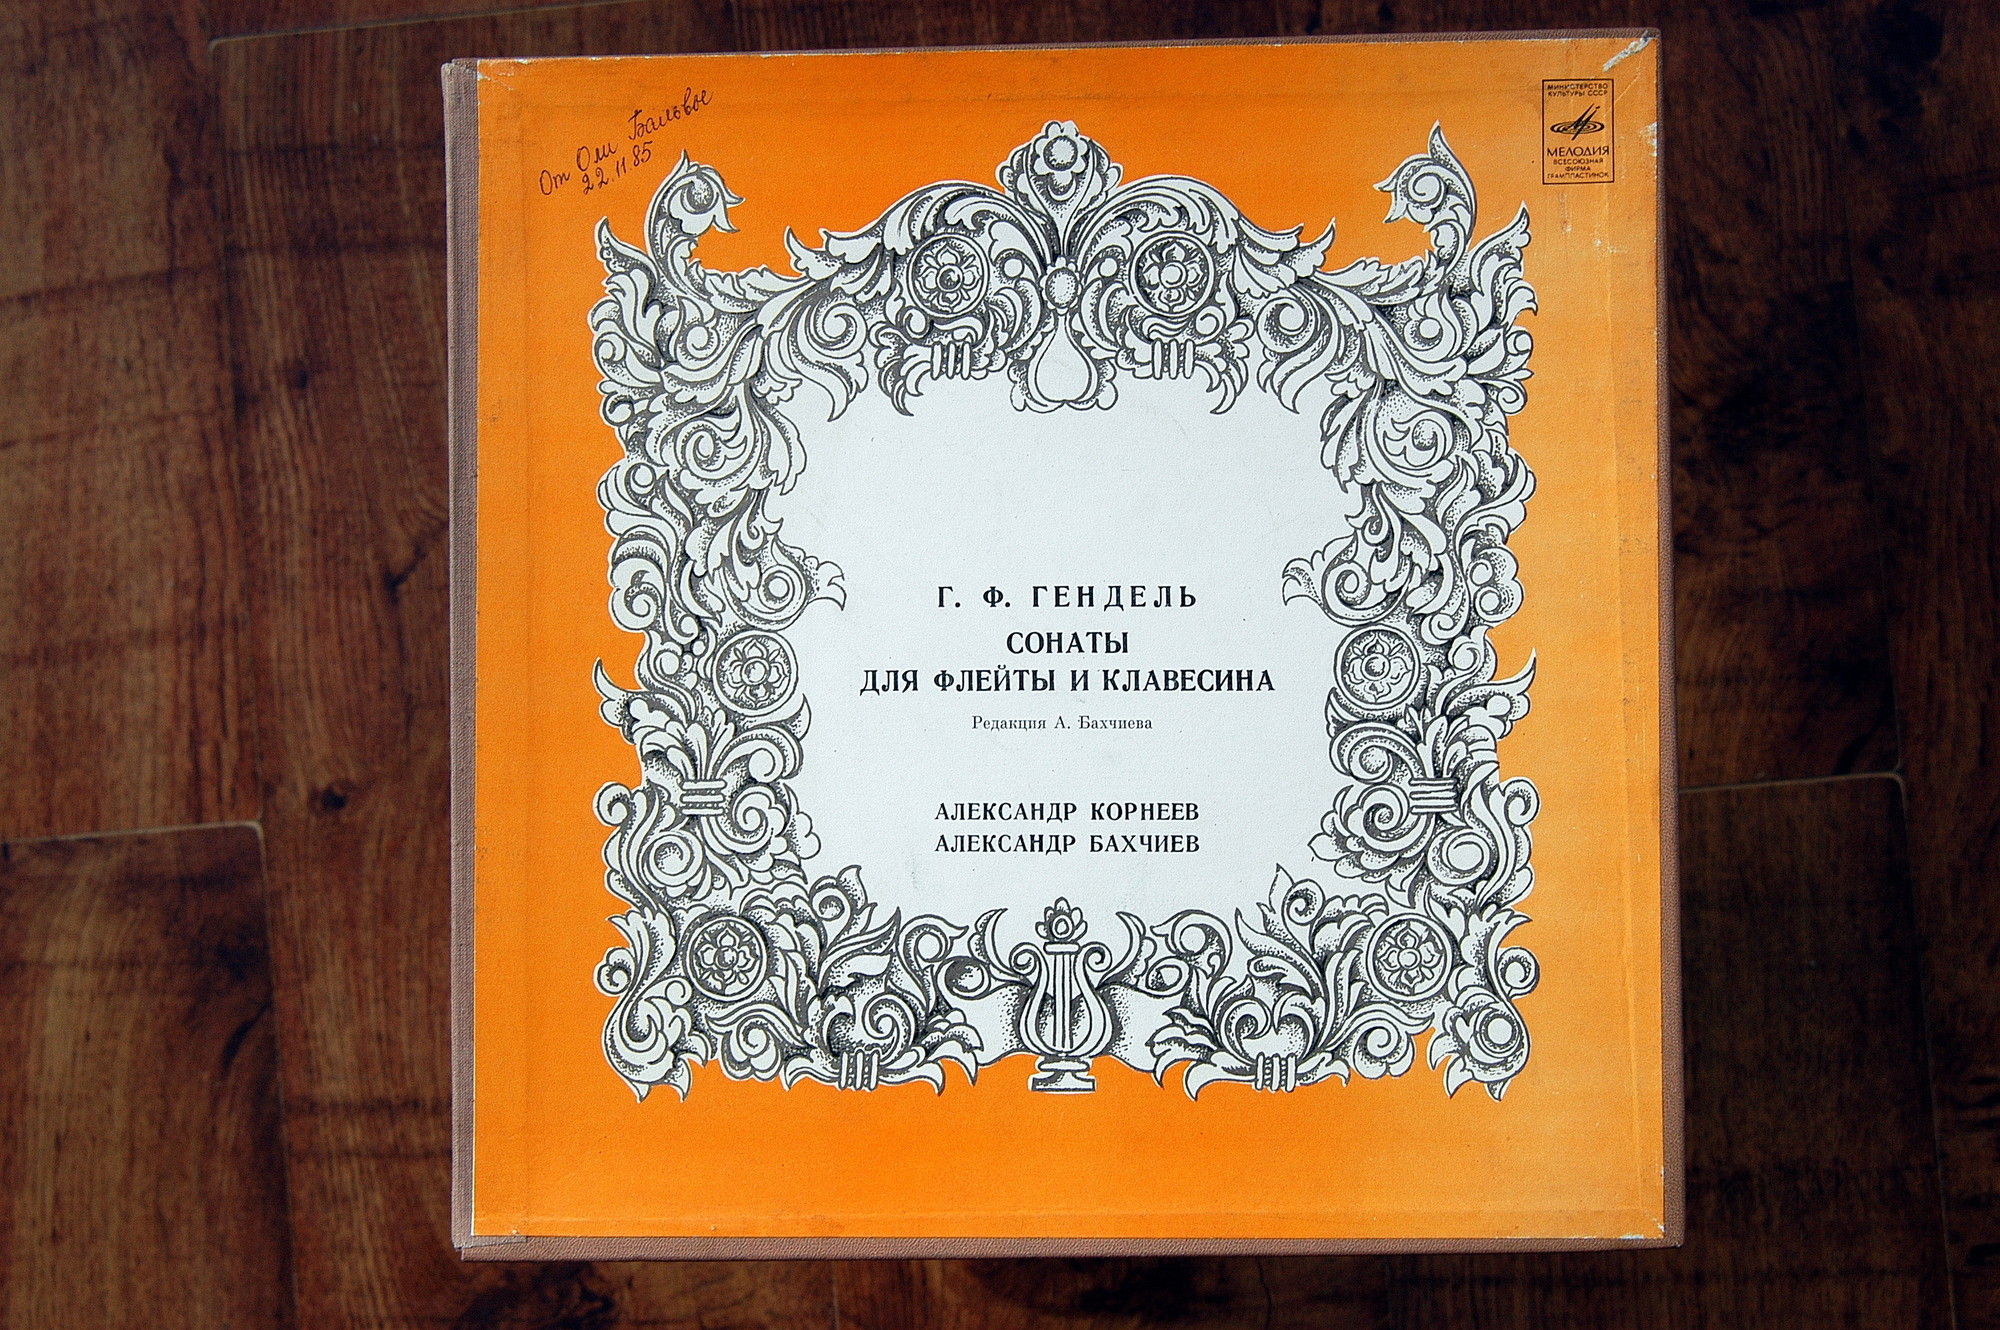 Георг Фридрих ГЕНДЕЛЬ (1685-1759): Сонаты для флейты и клавесина (А. Корнеев, А. Бахчиев)